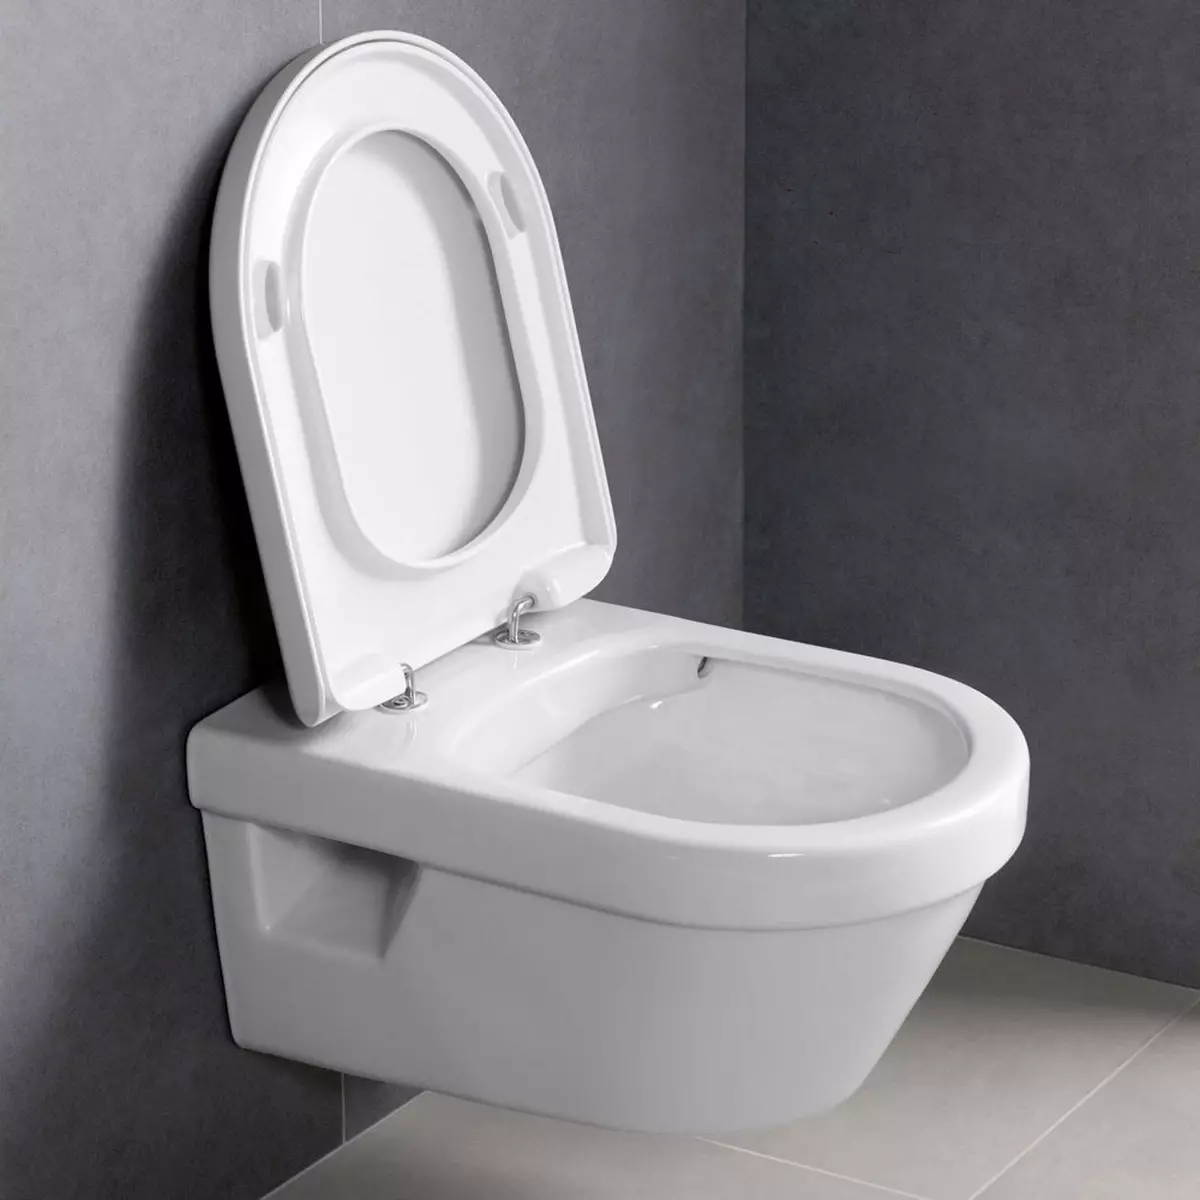 टॉयलेट (75 फोटो) असणे: ते काय आहे? रिमशिवाय शौचालय बाउल्सचे गुण आणि विवेक, फिल्टर मॉडेल आणि शौचालय बॉल कॉम्पॅक्ट, पुनरावलोकने 10547_37